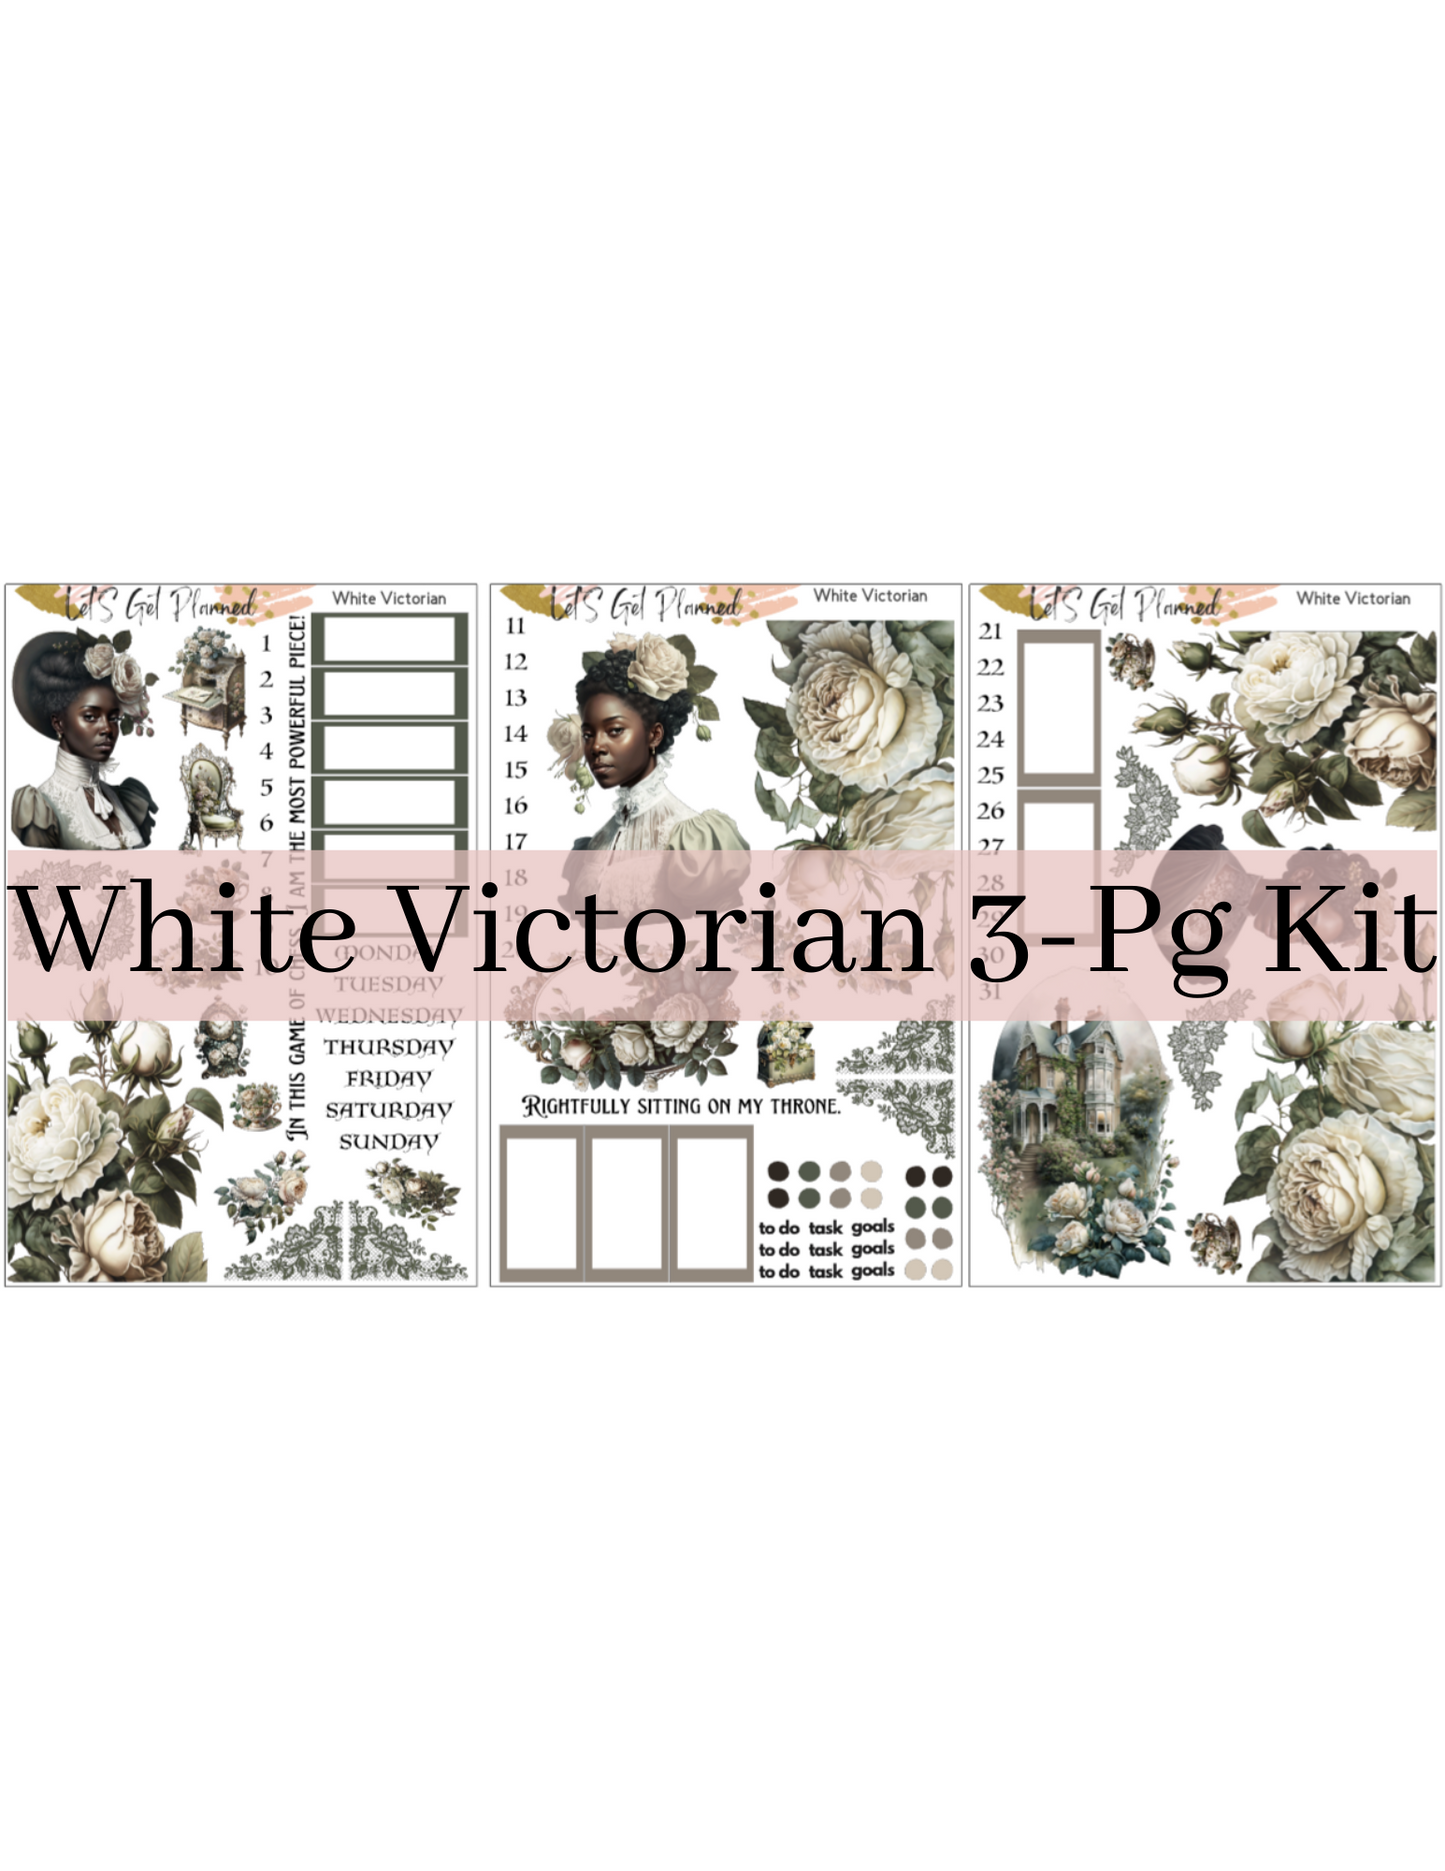 White Victorian 3-pg Kit